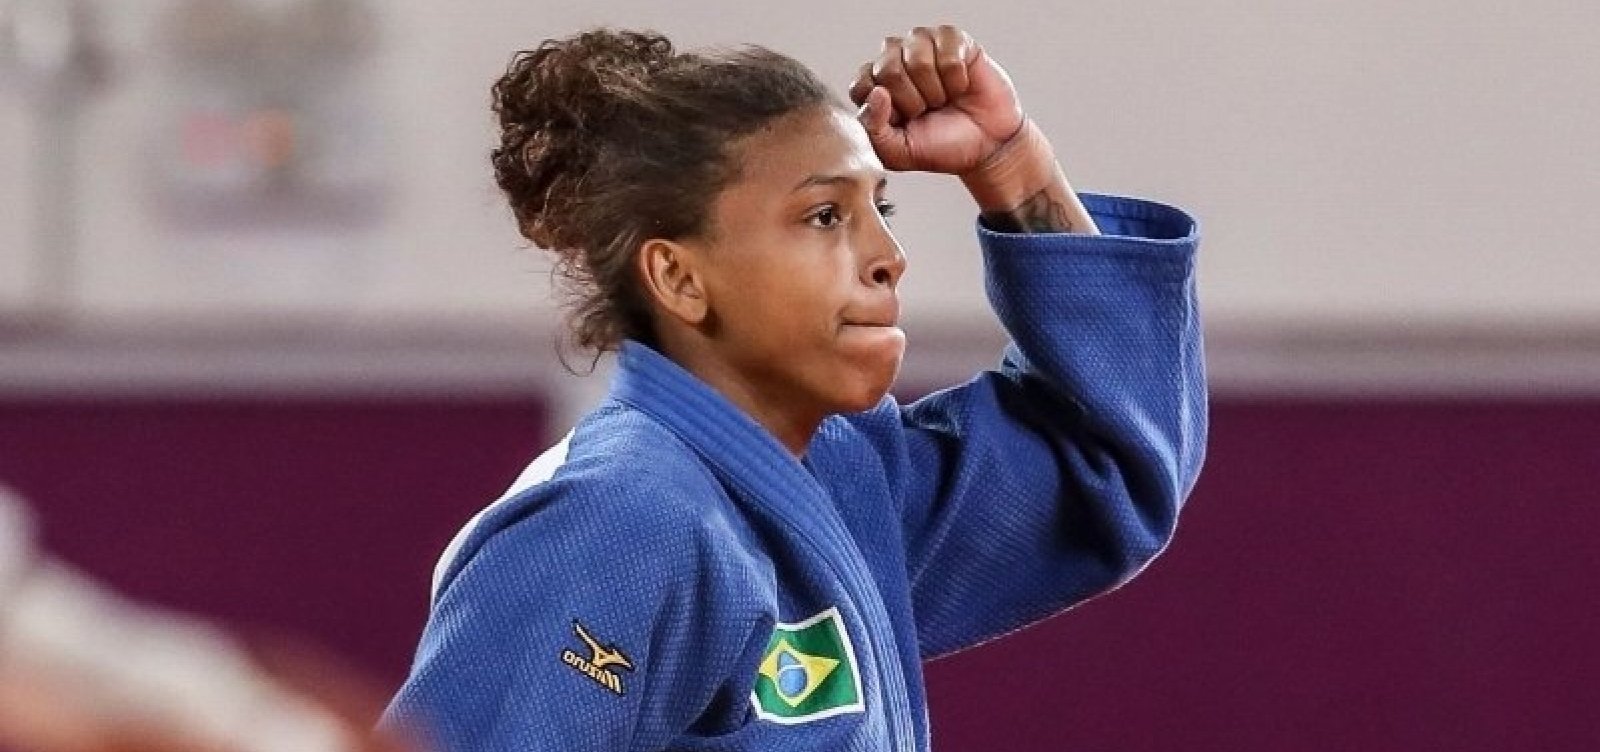 Após caso de doping, Rafaela Silva é suspensa por 2 anos do judô e deve ficar de fora de Tóquio-2020